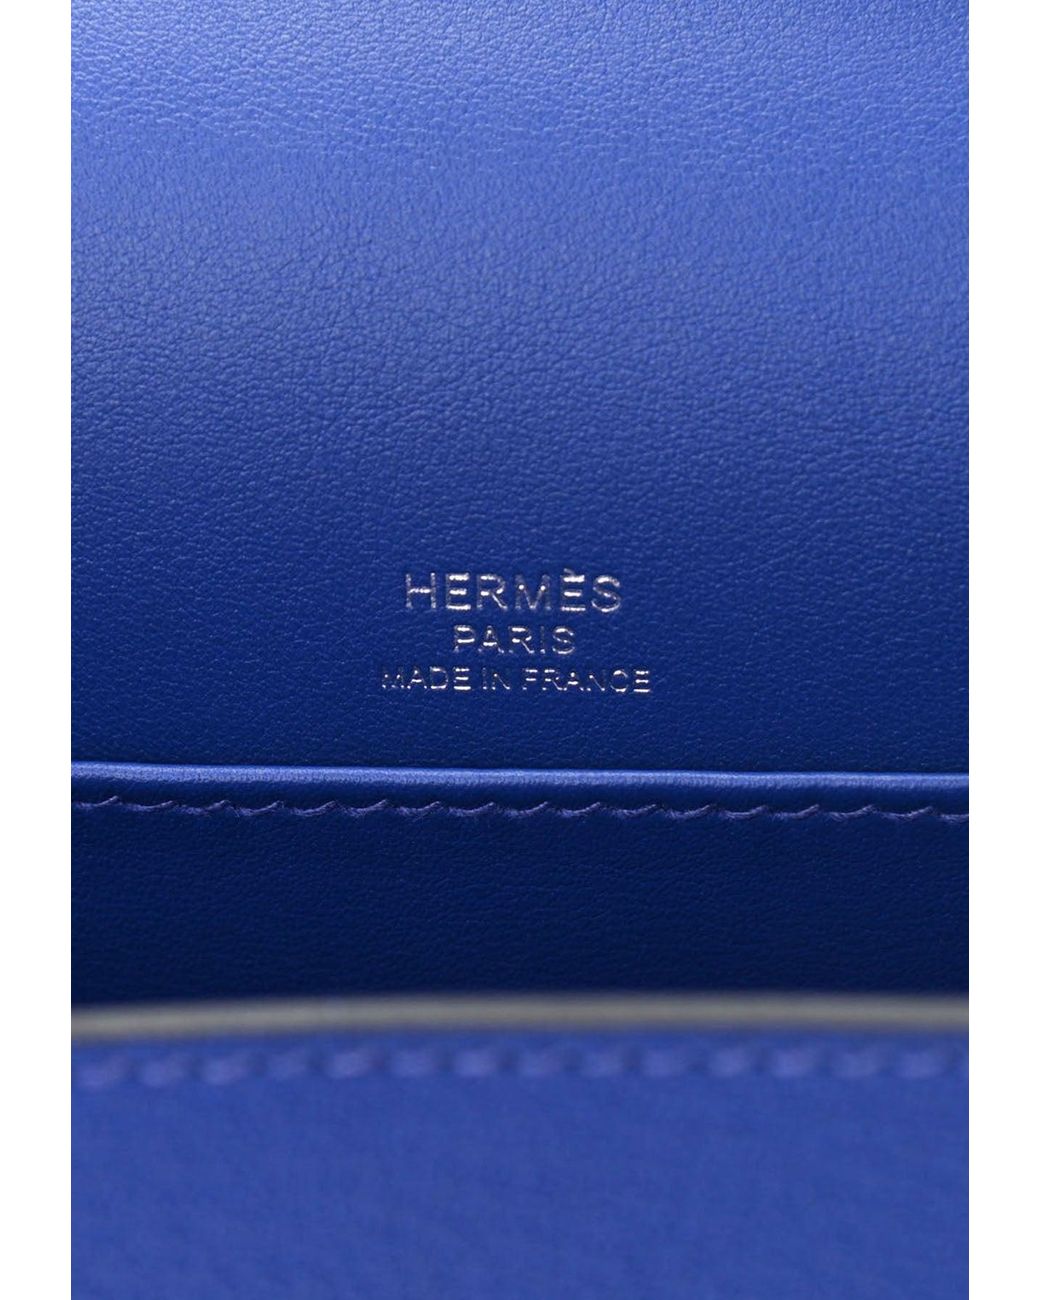 HERMES GHW Geta Bleu Brume Shoulder Bag Chevre Leather Light Blue